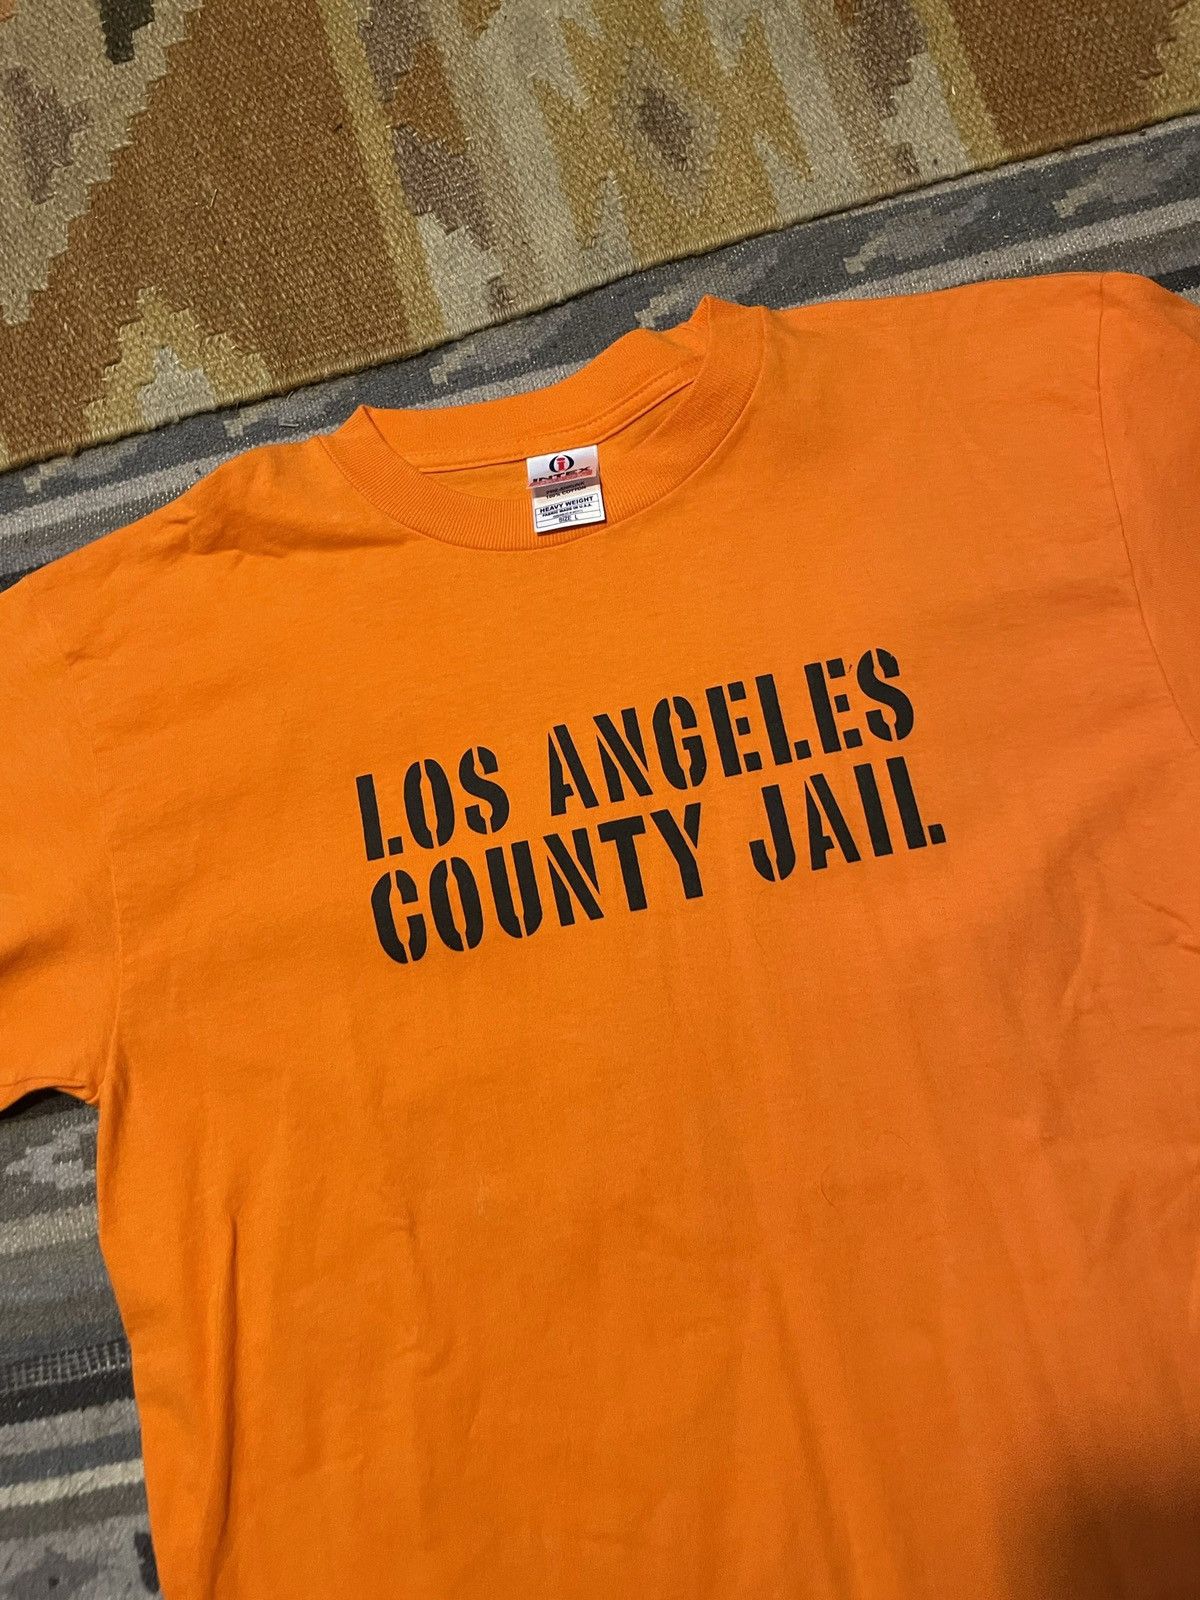 Vintage Vintage Los Angeles county jail graphic t shirt Size US L / EU 52-54 / 3 - 2 Preview